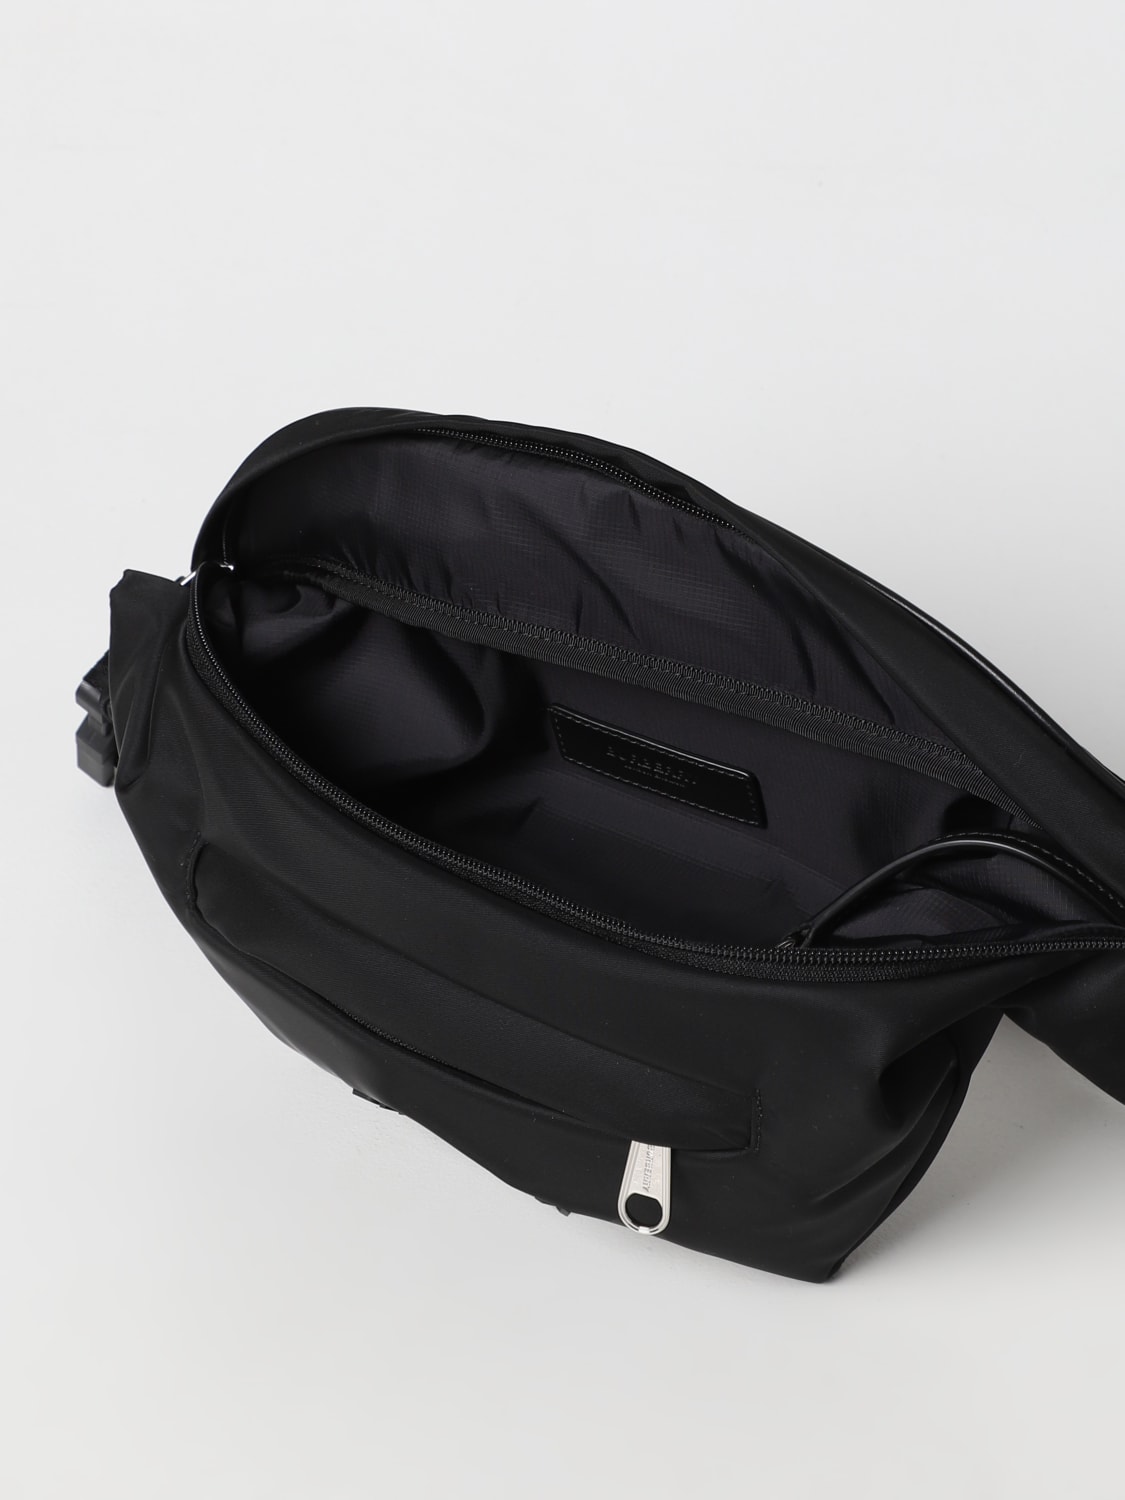 Burberry Men's Black Leather Belt Bag